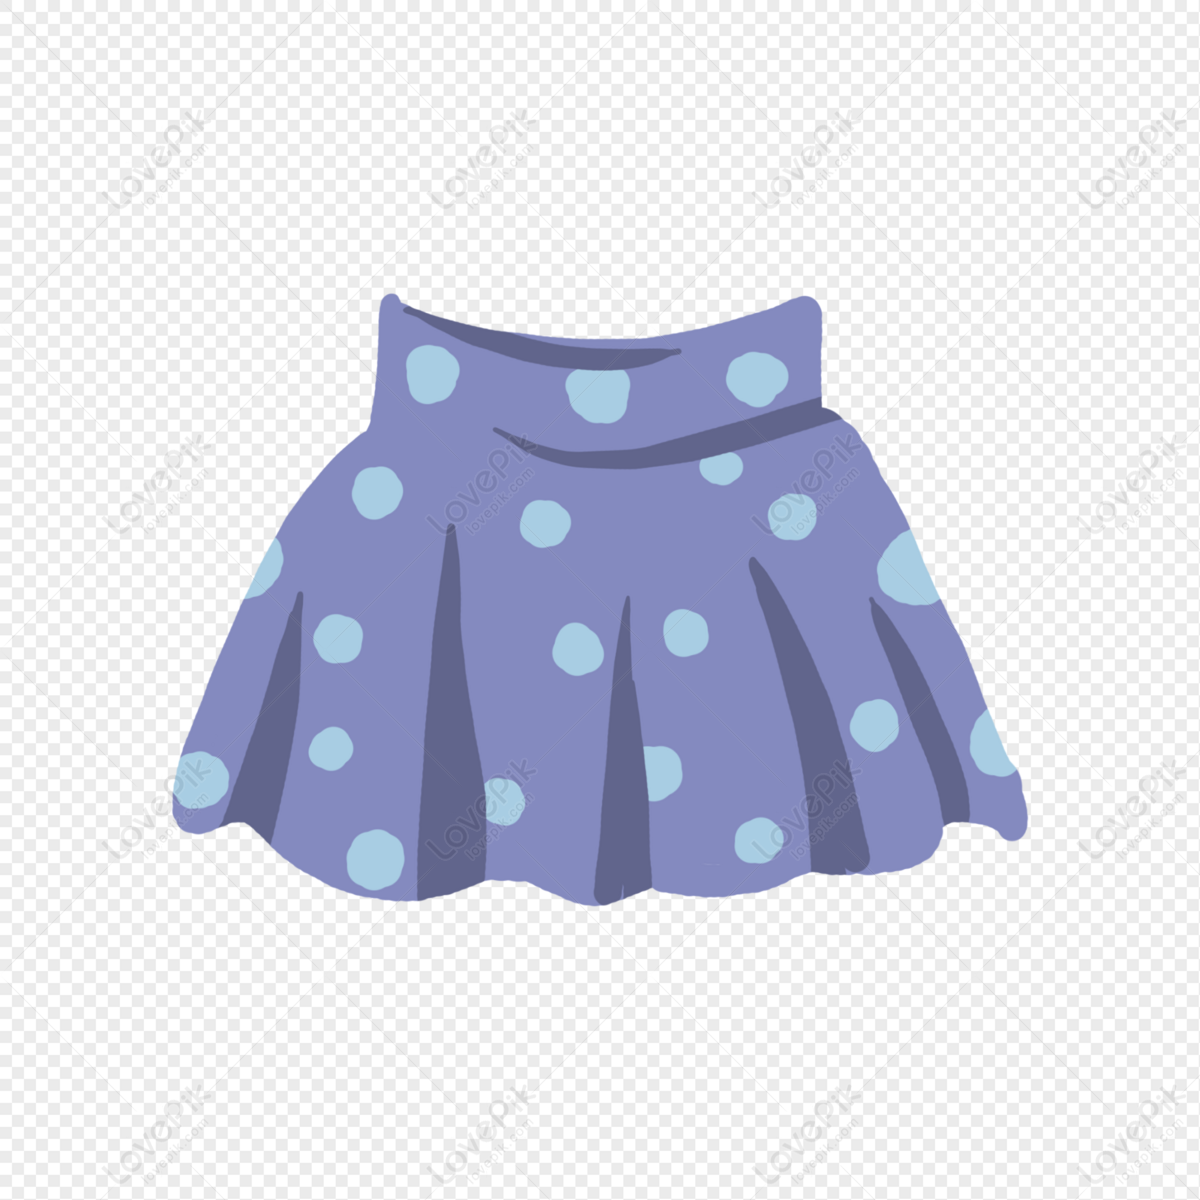 Short skirt PNG images: Bạn cần tìm hình ảnh miễn phí của những chiếc váy ngắn để sử dụng trong thiết kế của mình? Tại đây, chúng tôi cung cấp những hình ảnh PNG đẹp mắt với nhiều màu sắc và kiểu dáng khác nhau. Cùng khám phá và tìm kiếm những bức ảnh đẹp nhất để thỏa mãn sự sáng tạo của bạn.